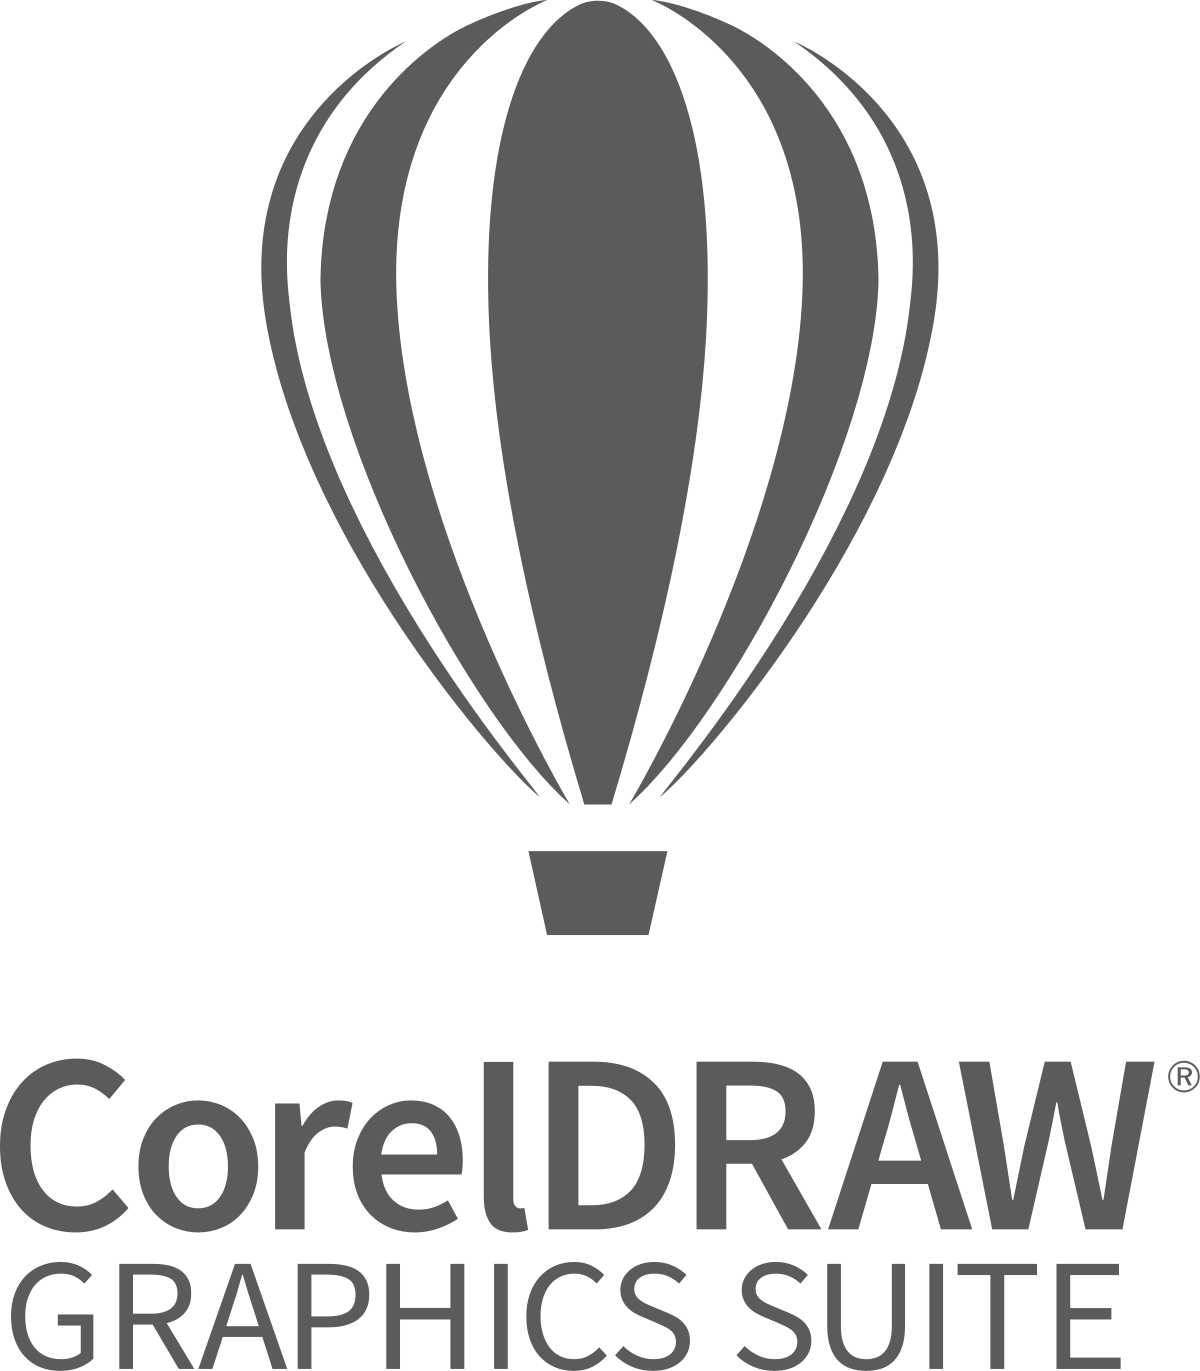 Descargar CorelDRAW Graphics Suite gratis - 2021 Última versión